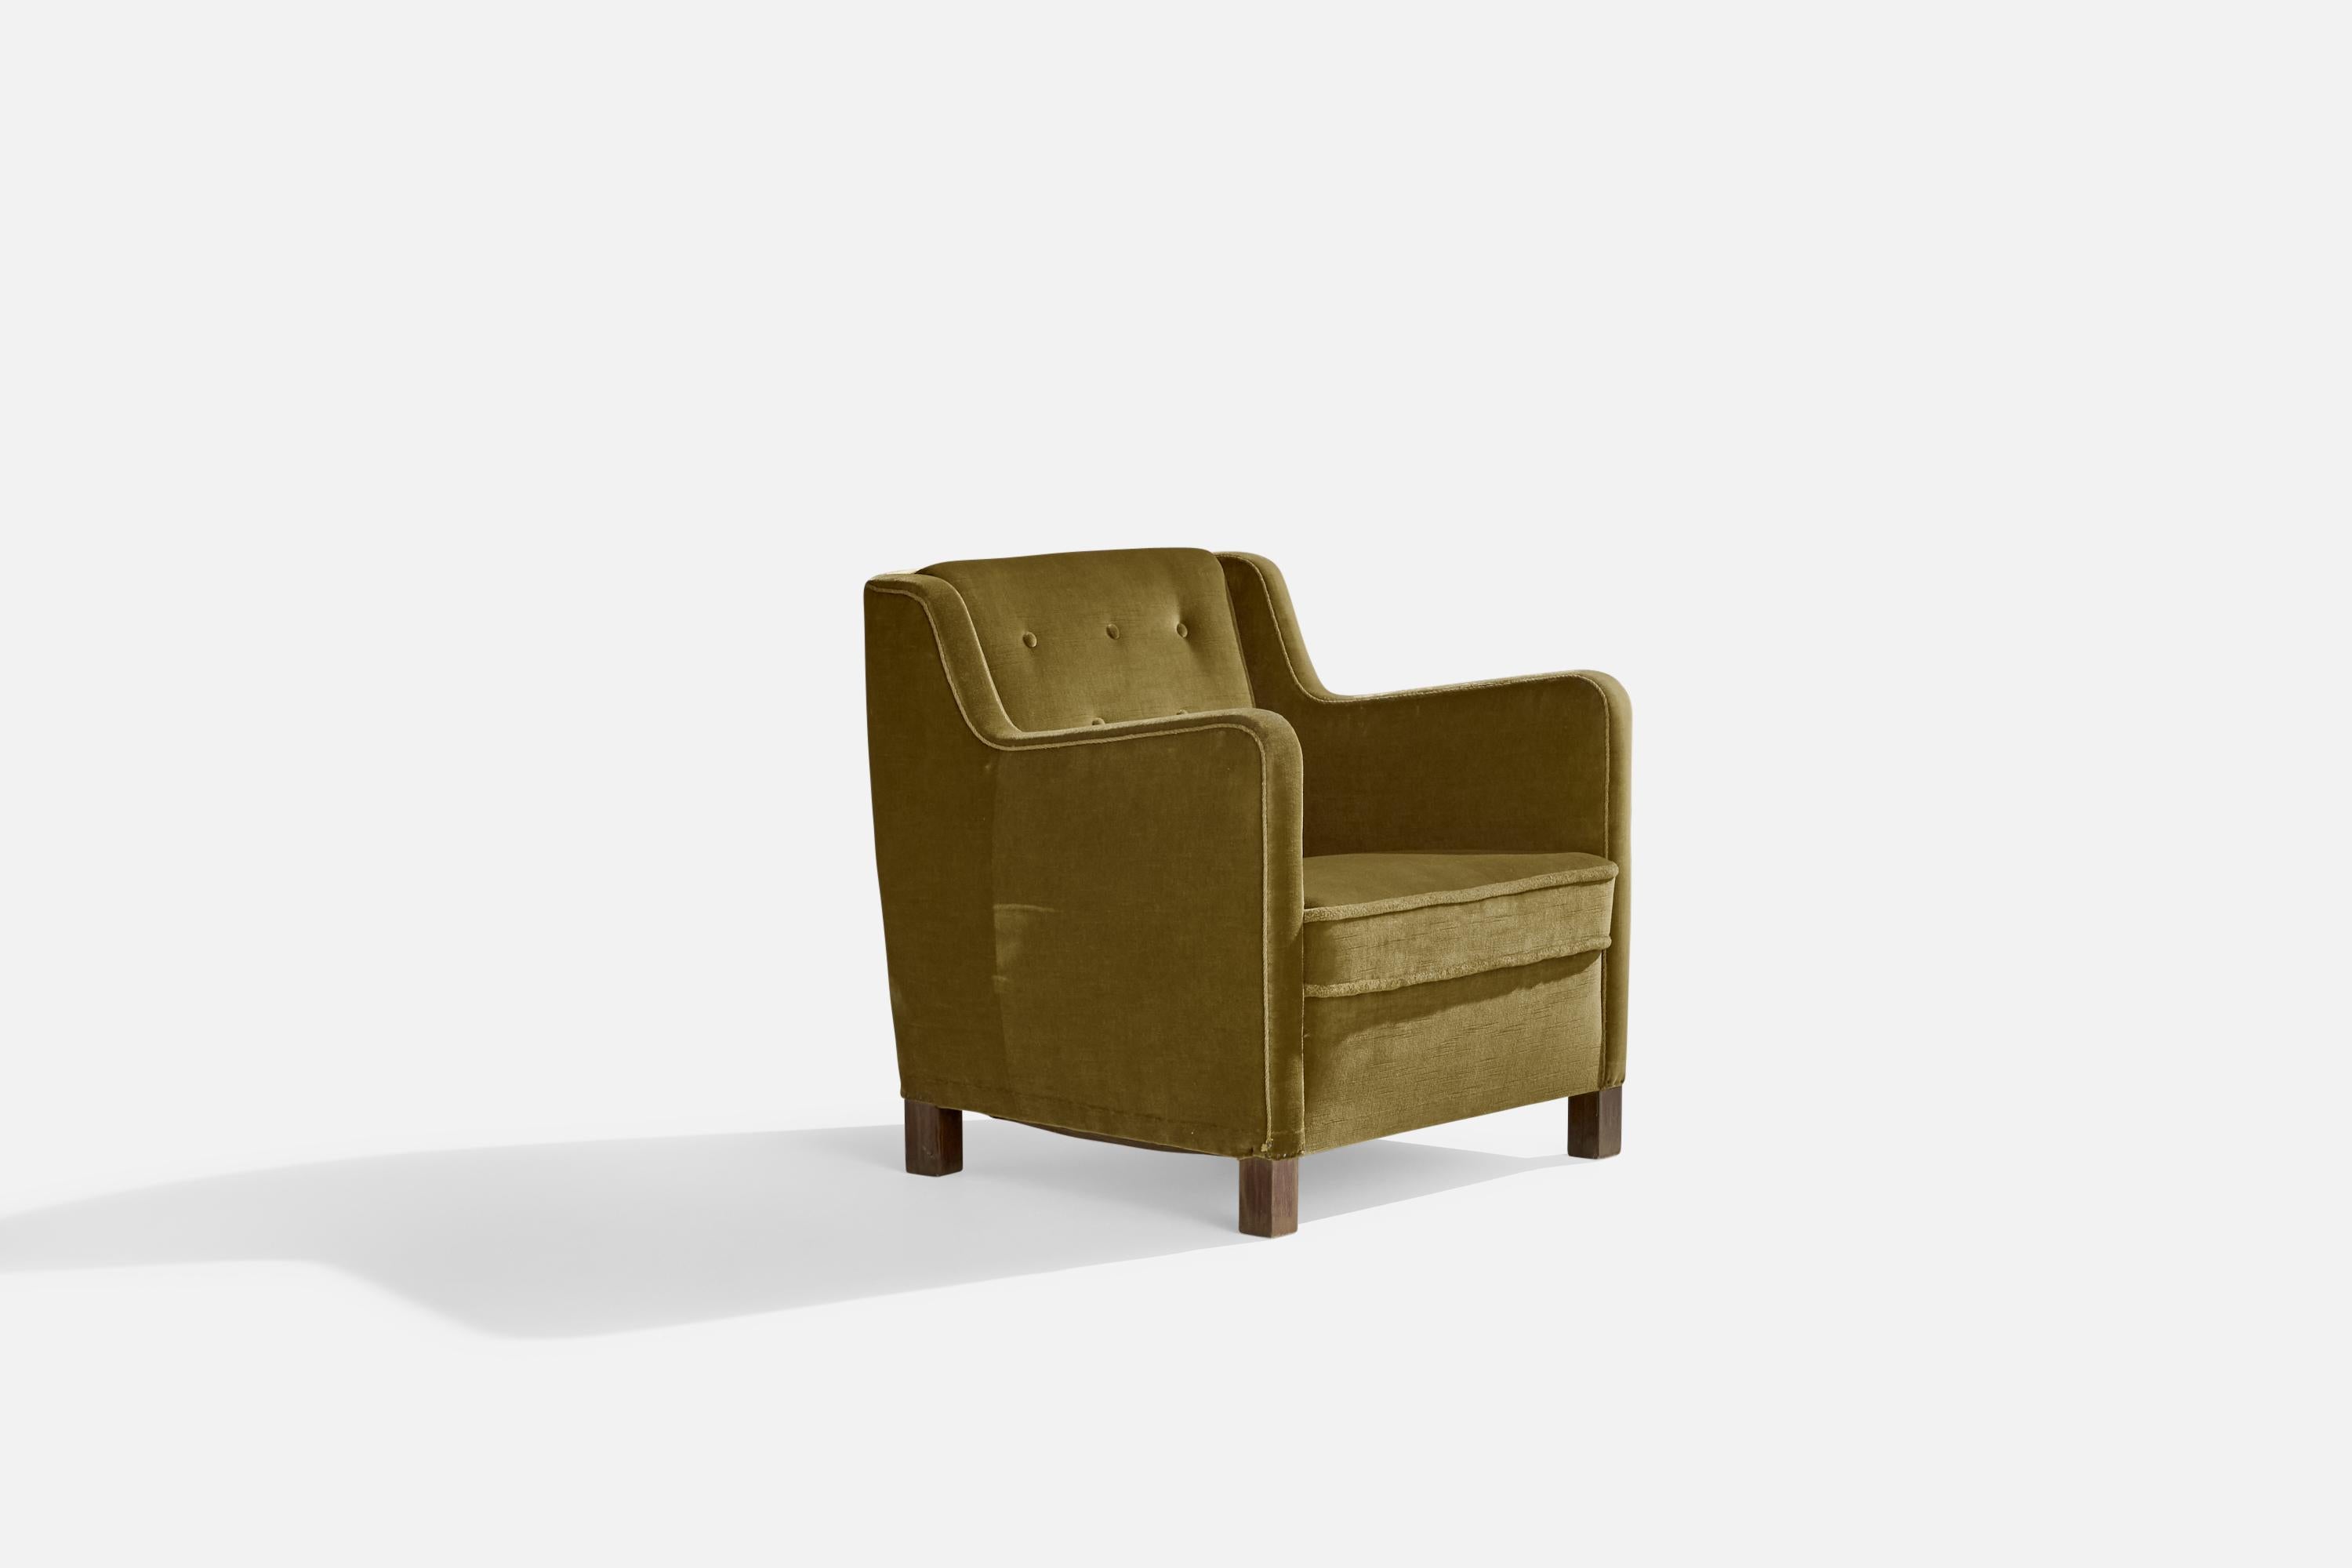 Ein Sessel aus grünem Samt und dunkel gebeiztem Holz, entworfen und hergestellt in Dänemark, 1940er Jahre.

Sitzhöhe 15